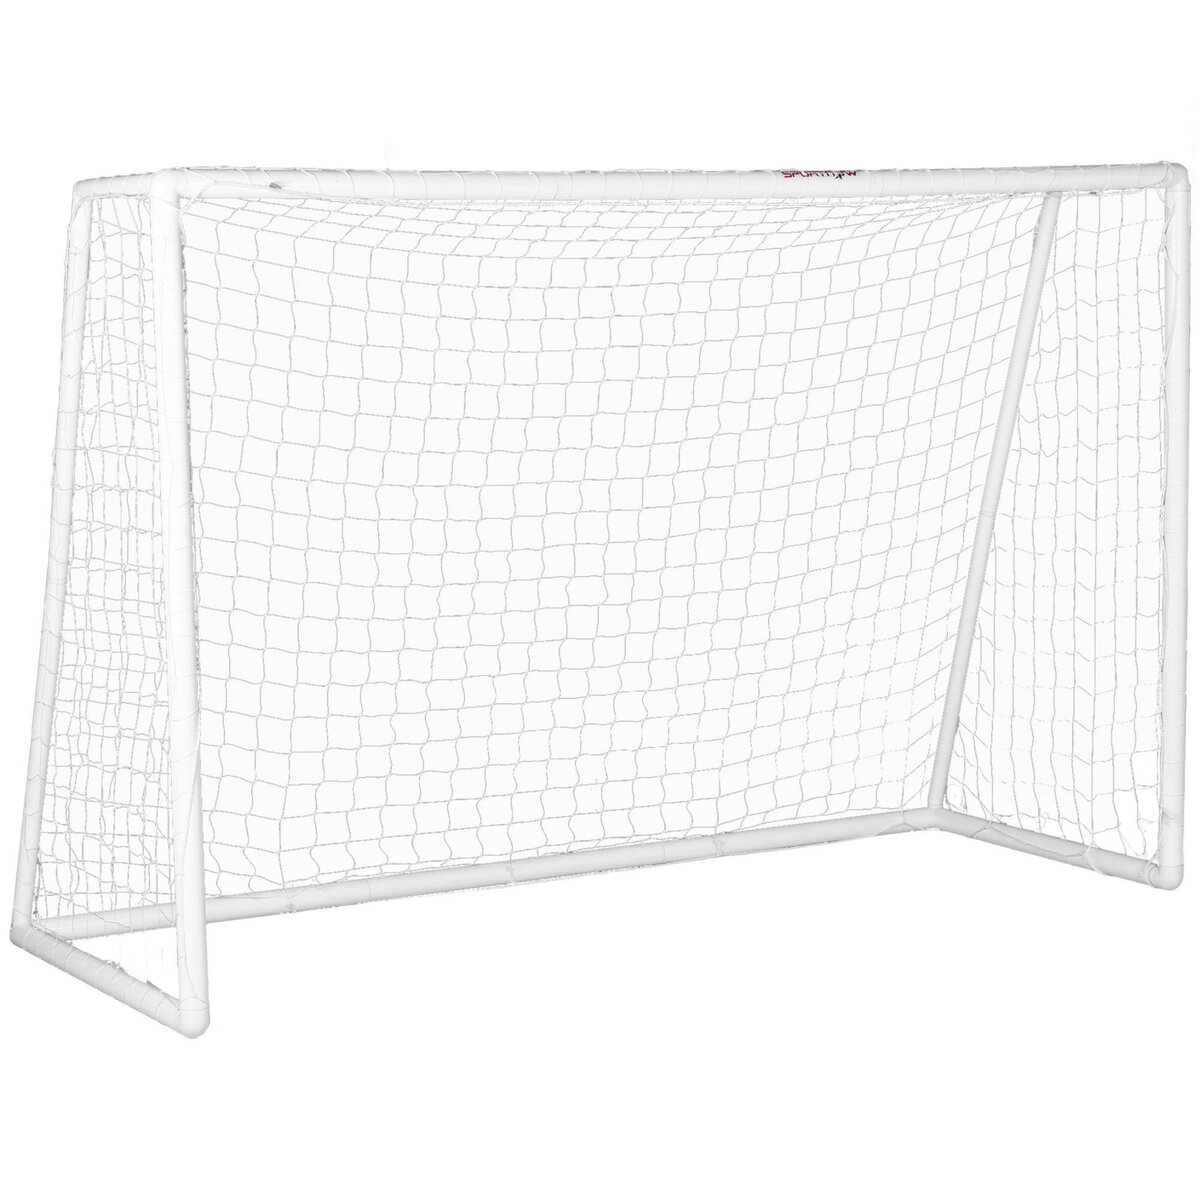 HOMCOM But de football cage de foot - dim. 180L x 92l x 124H cm - PVC blanc